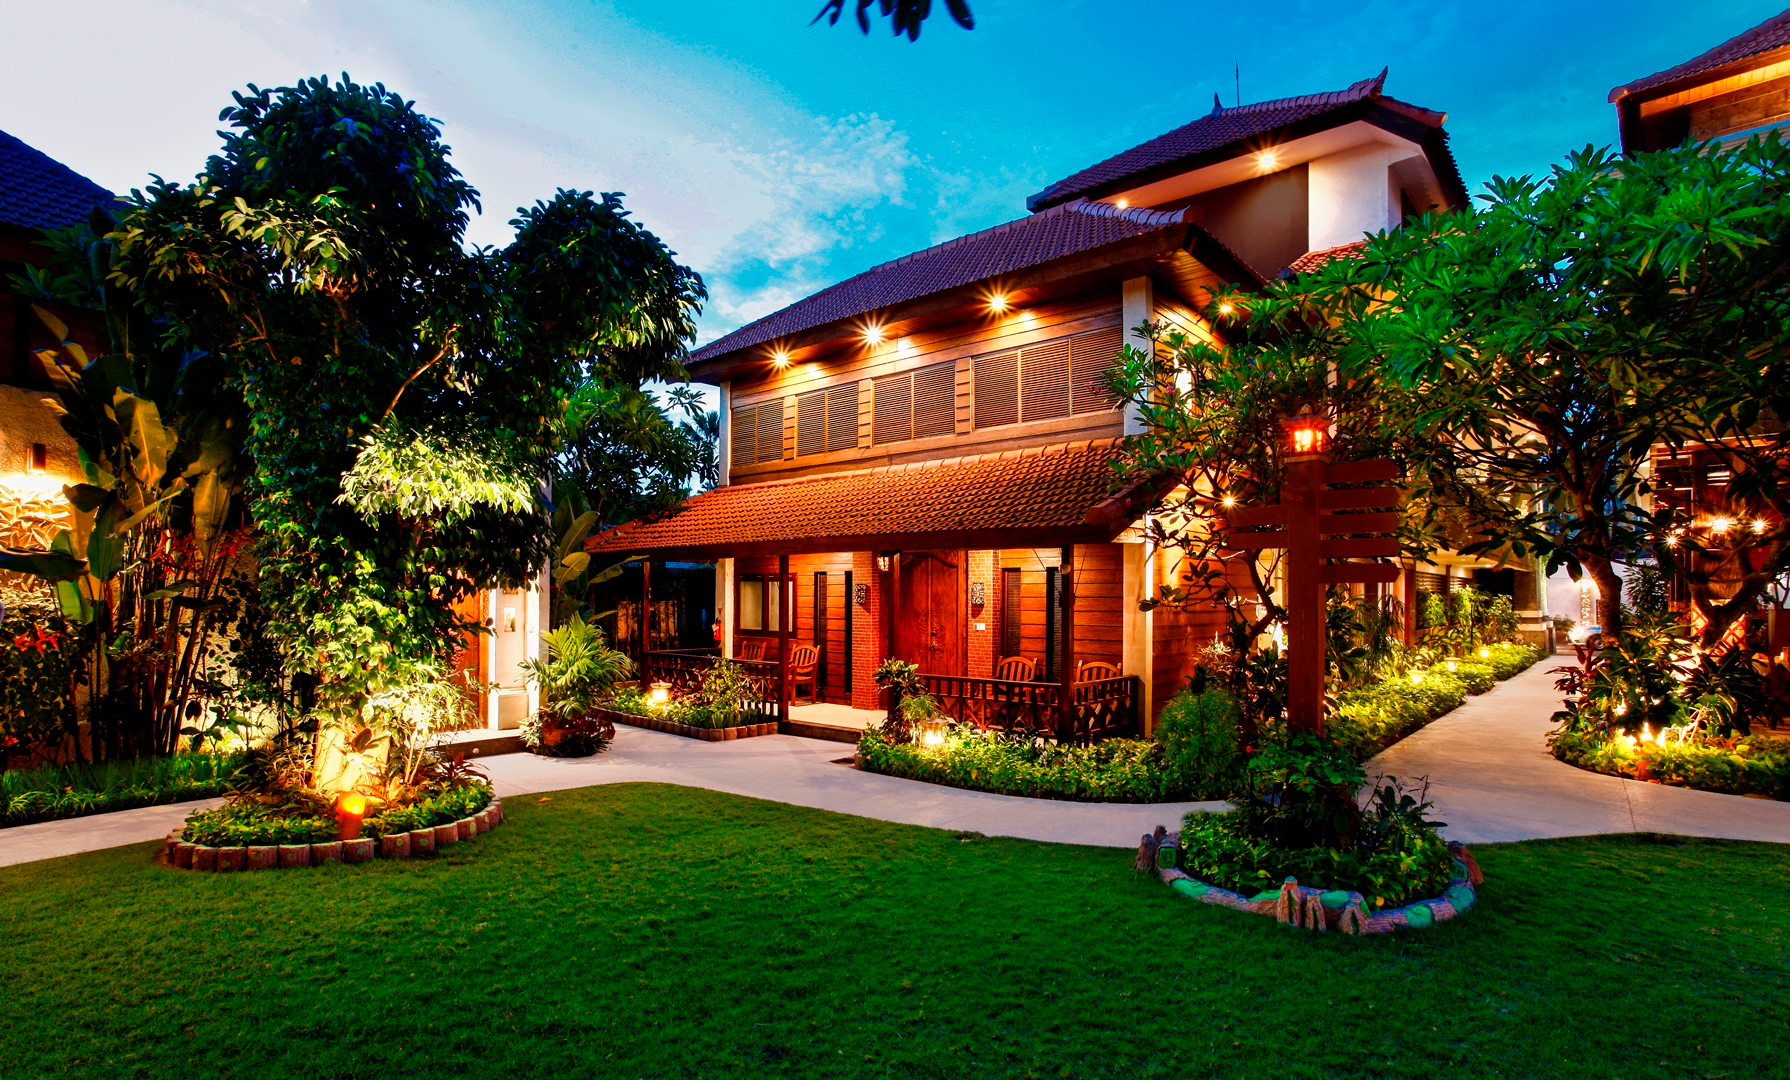 Astagina Resort Villa and Spa, Badung